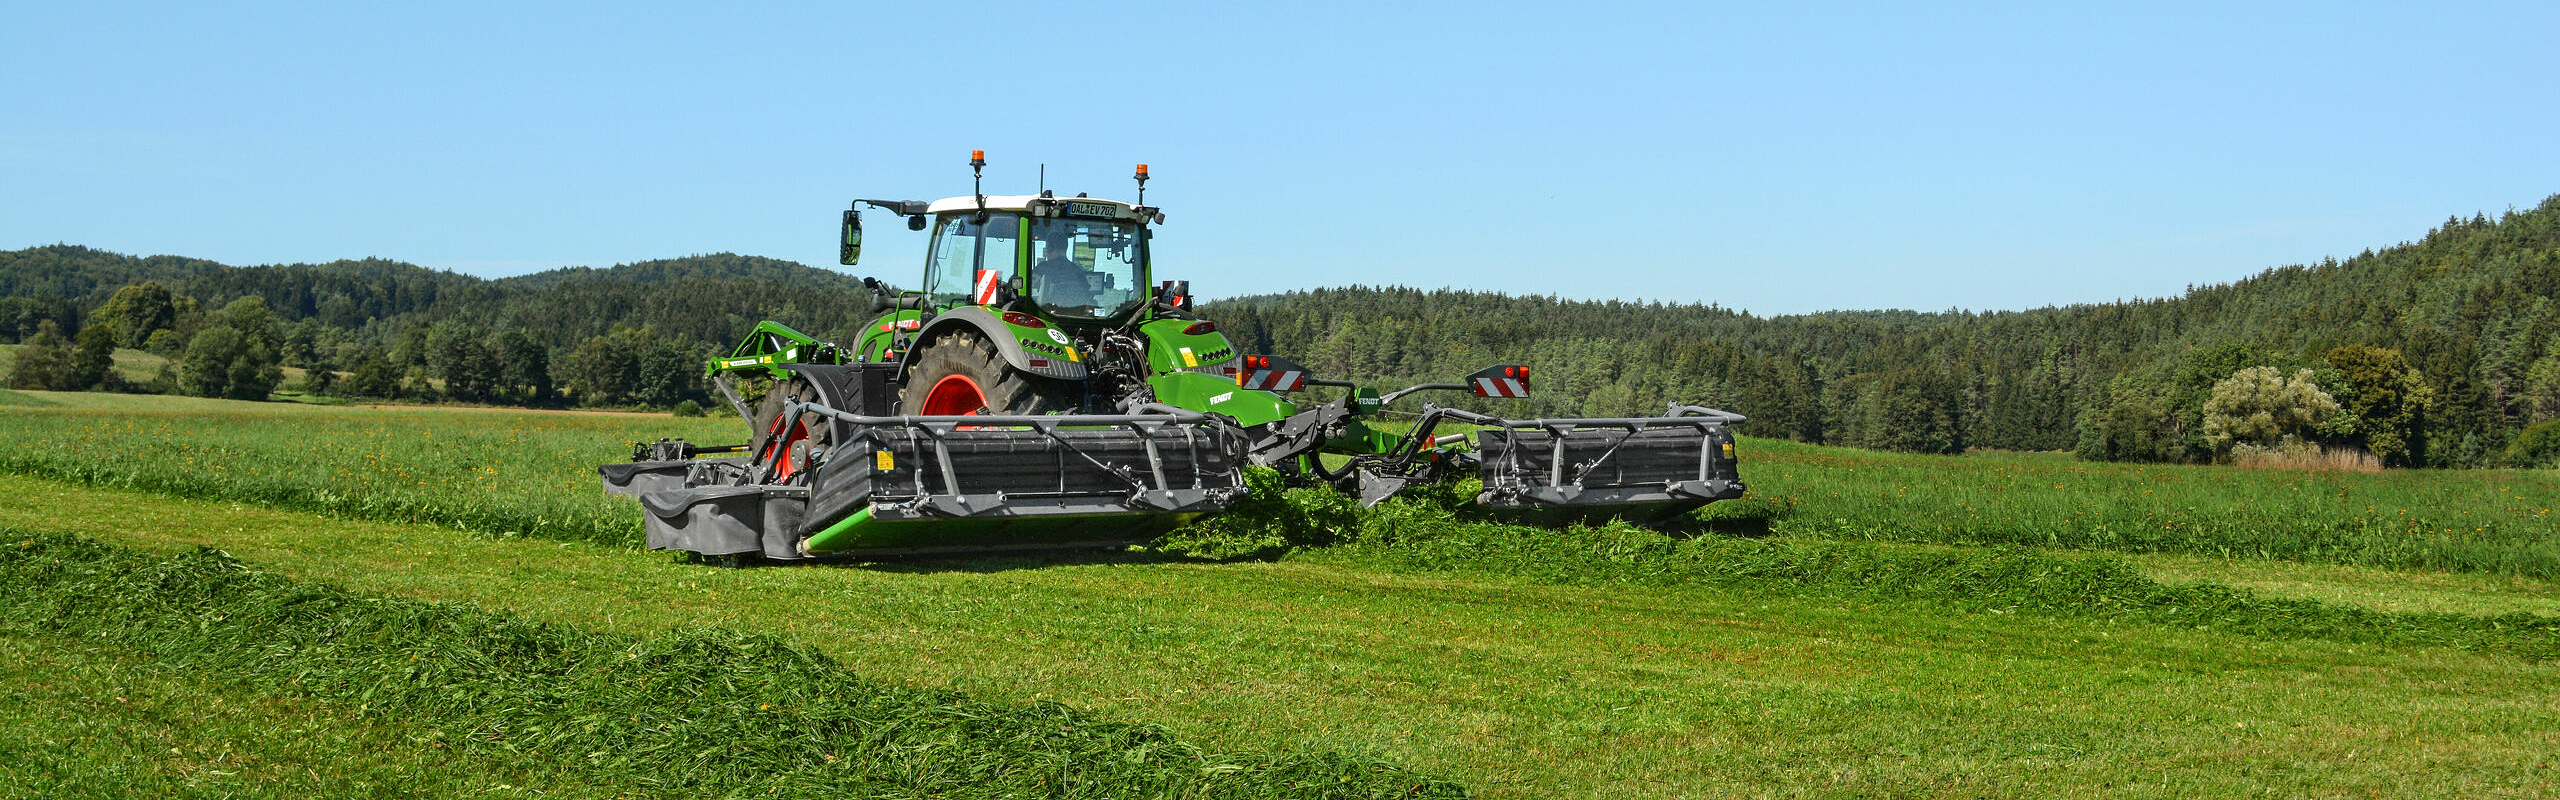 Fendt-traktor på det grønne feltet, innhøsting med Fendt Slicer